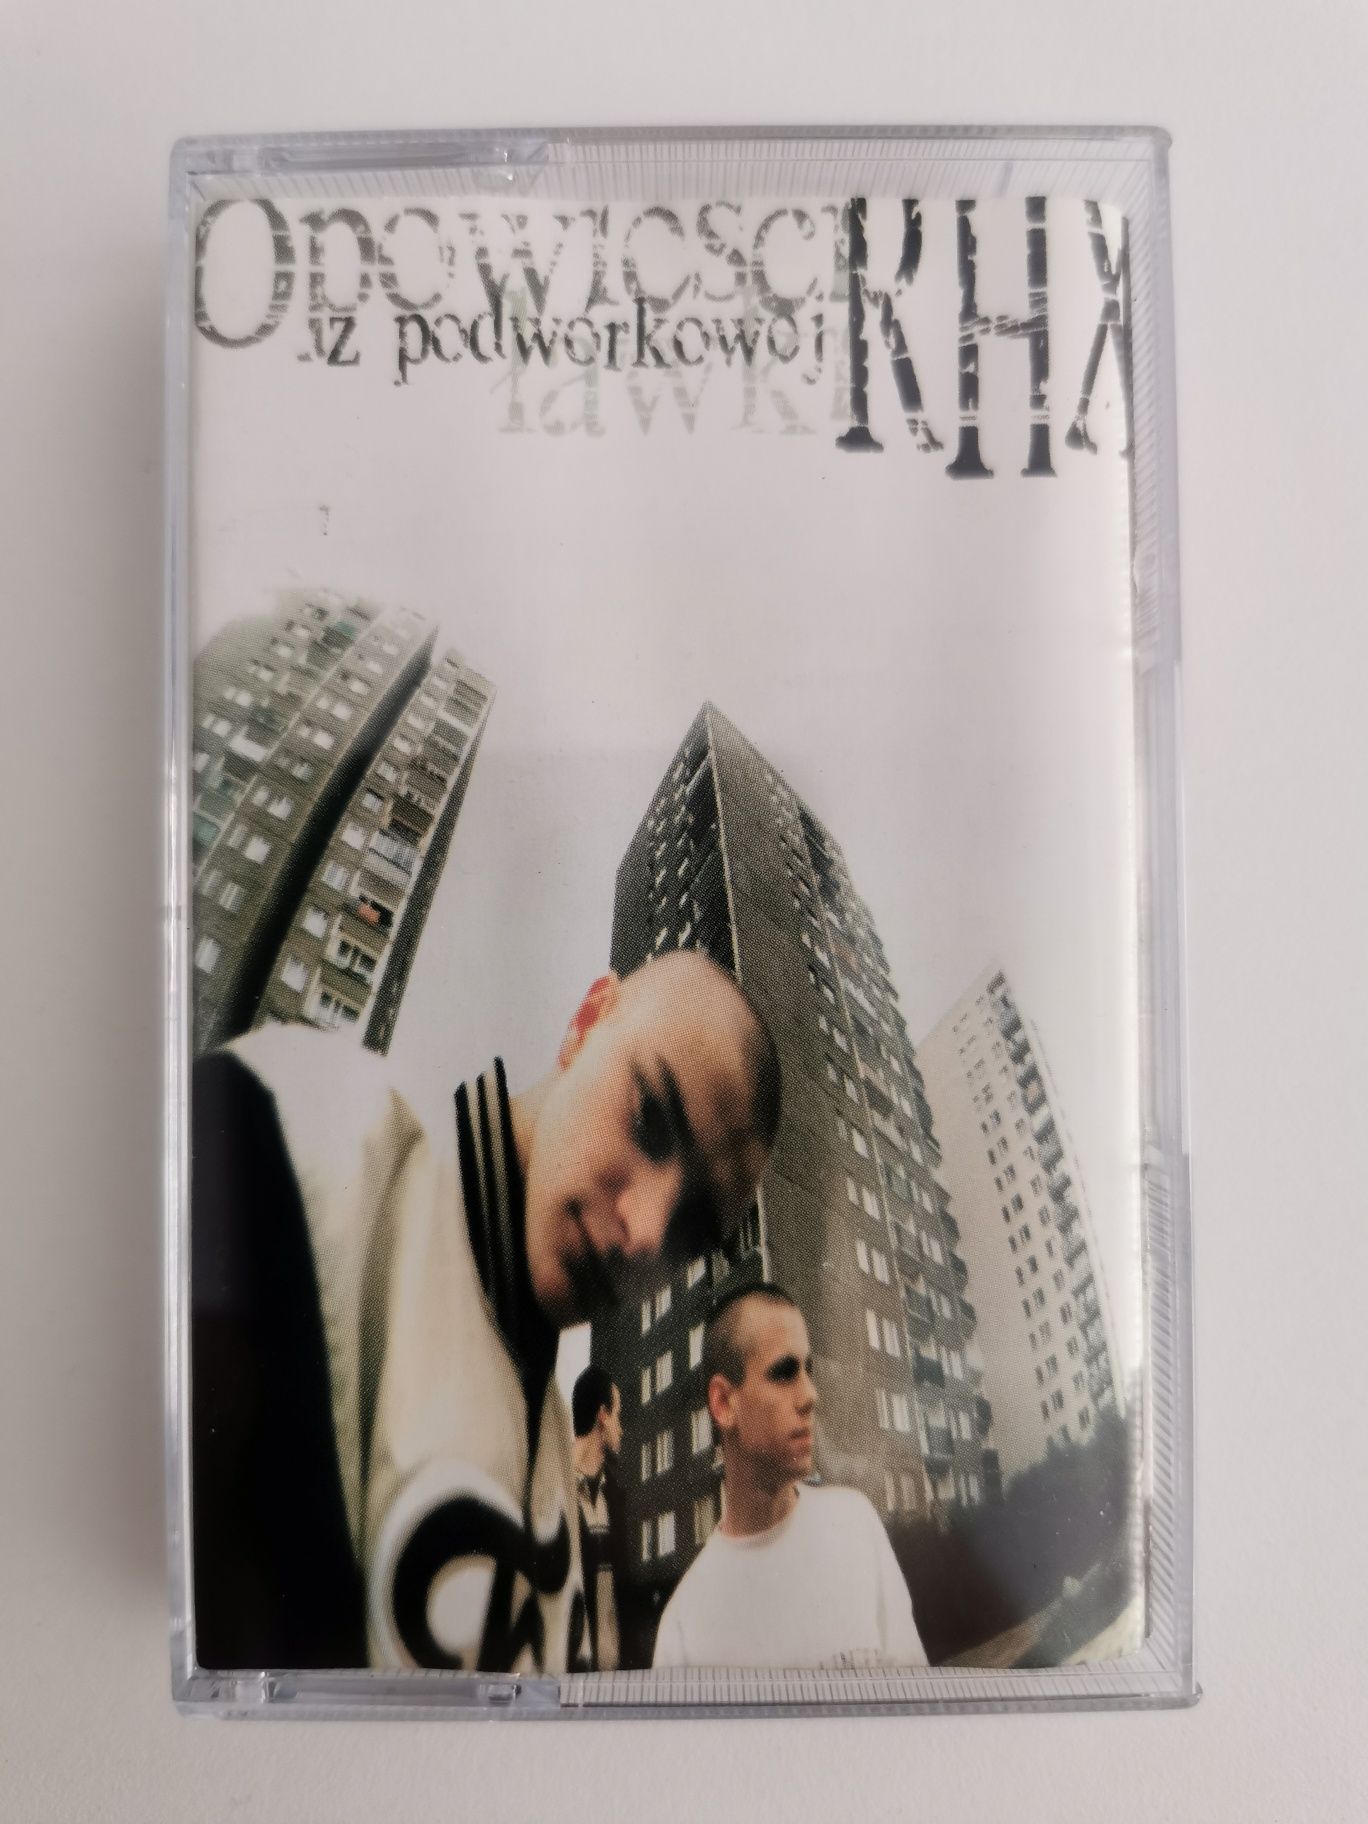 RHX - Opowieści z Podwórkowej Ławki kaseta rap hip hop